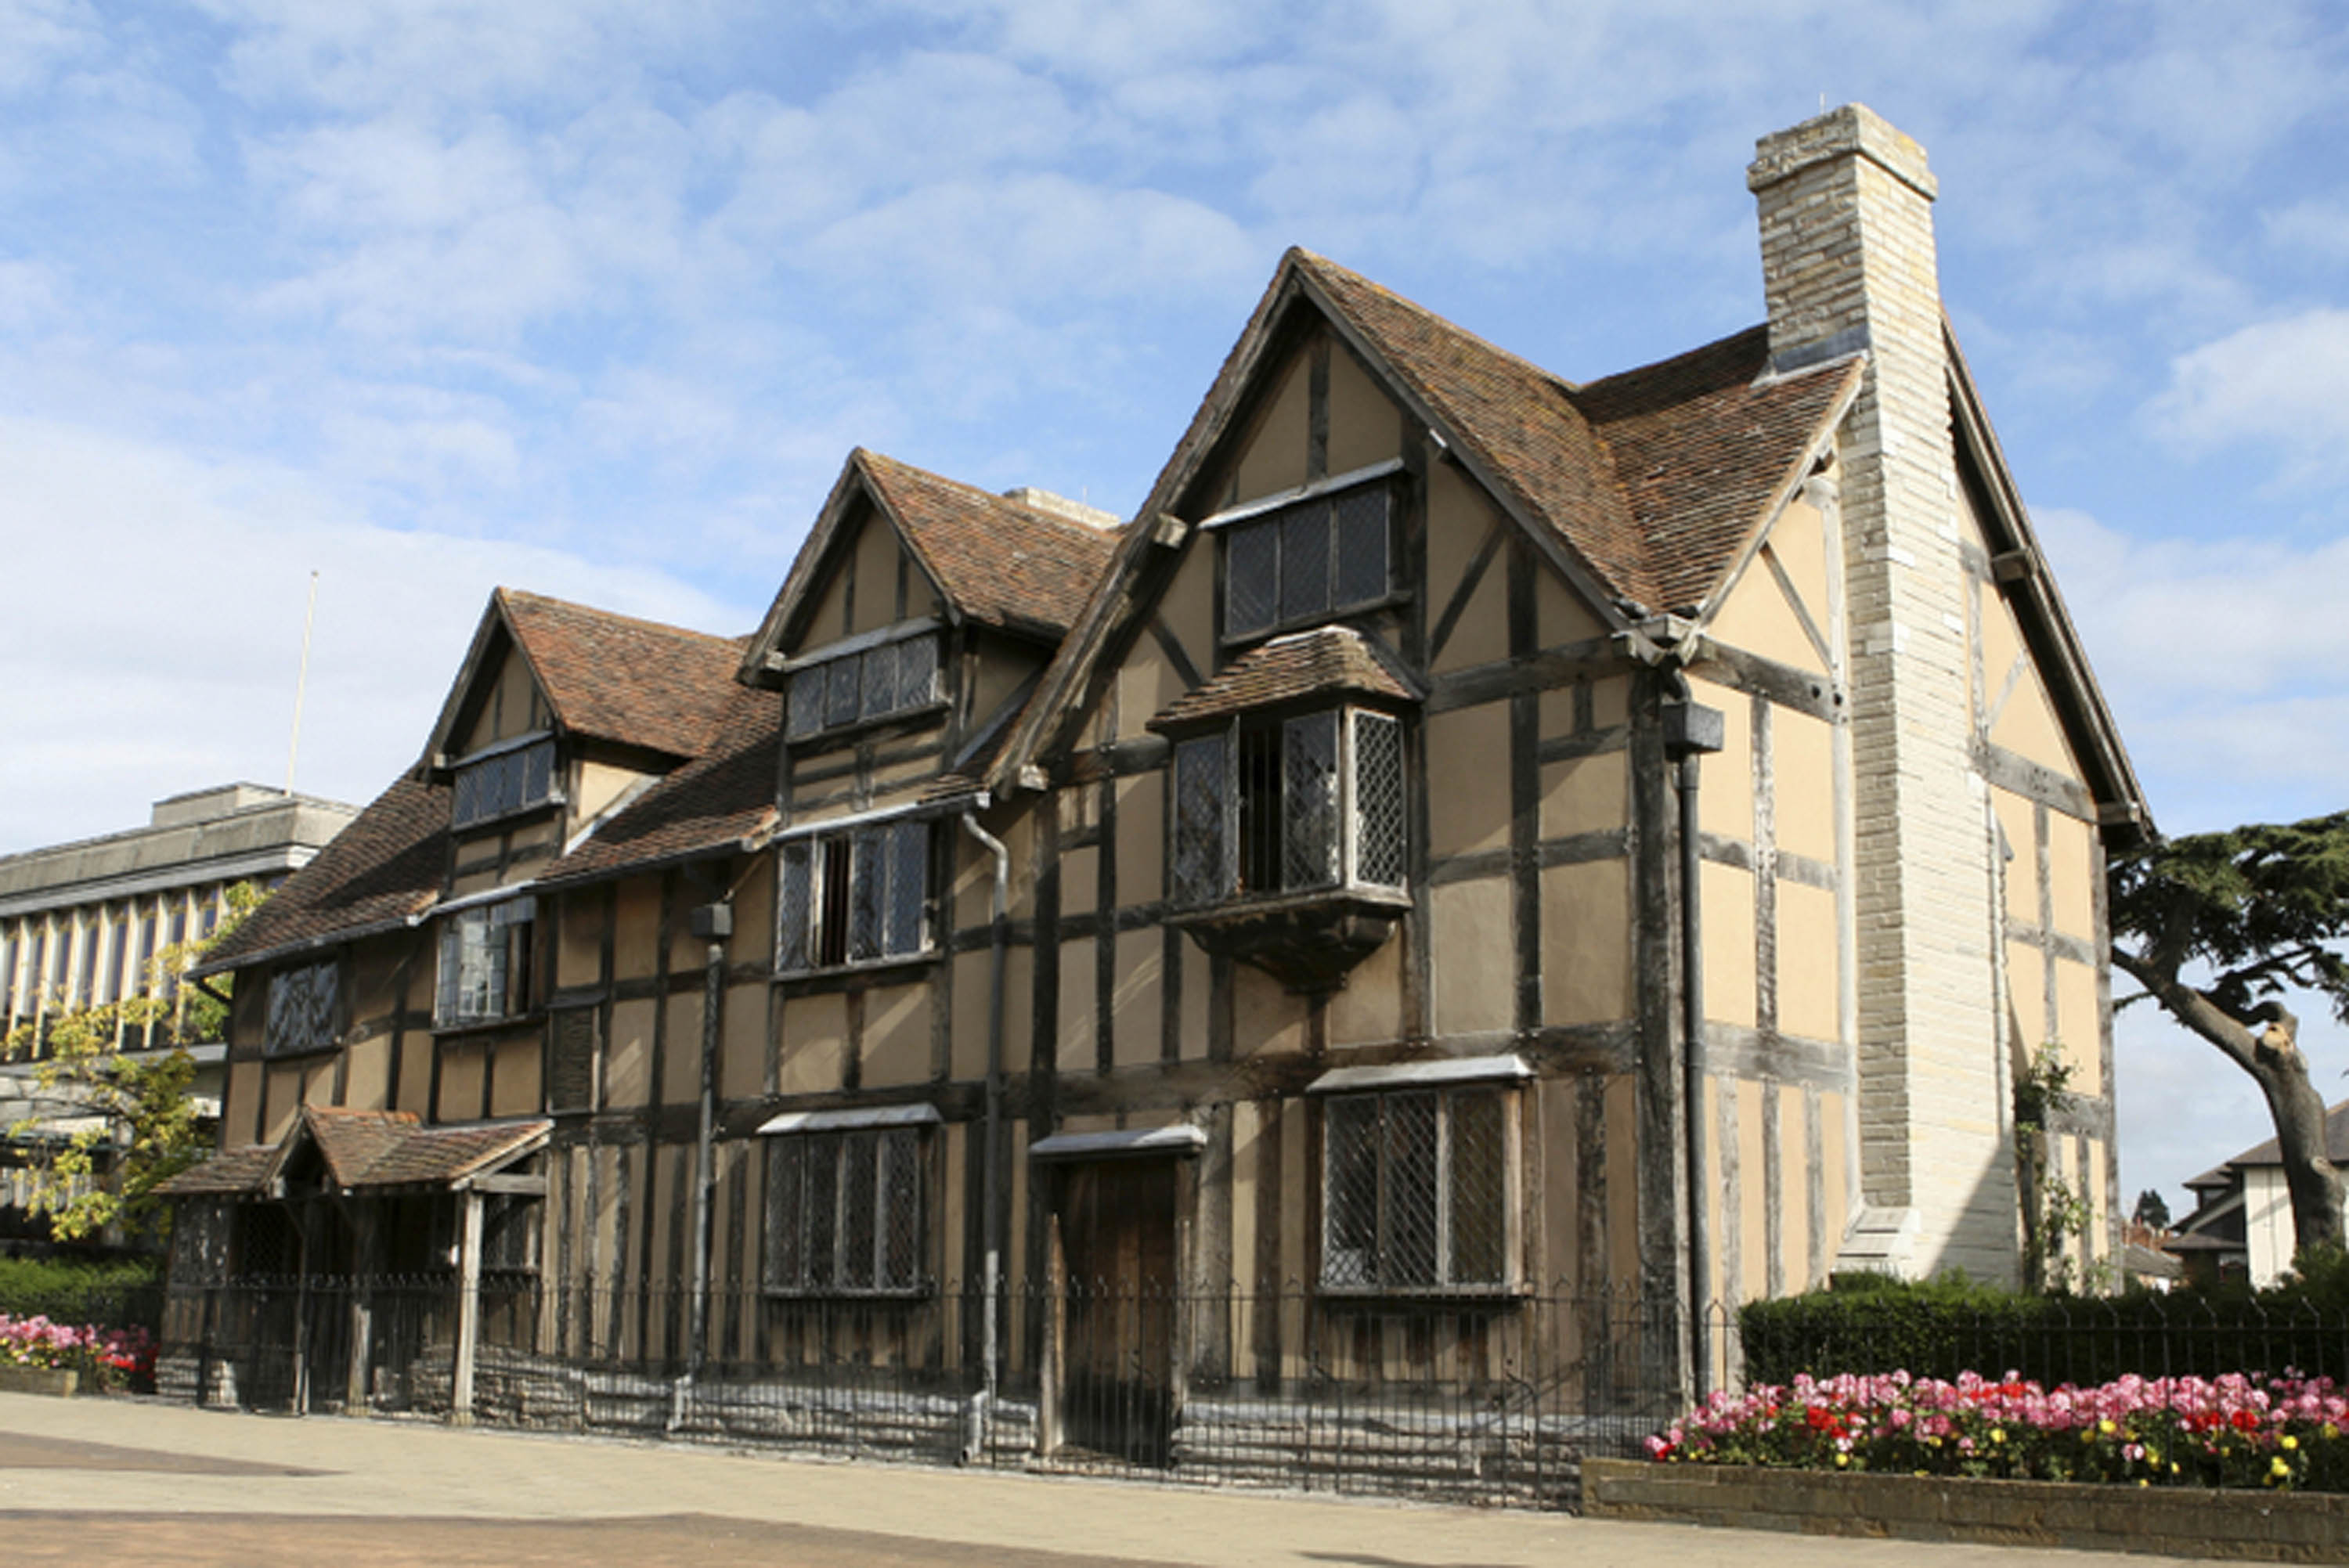 William Shakespeares Birthplace Stratford Upon Avon Worldstrides